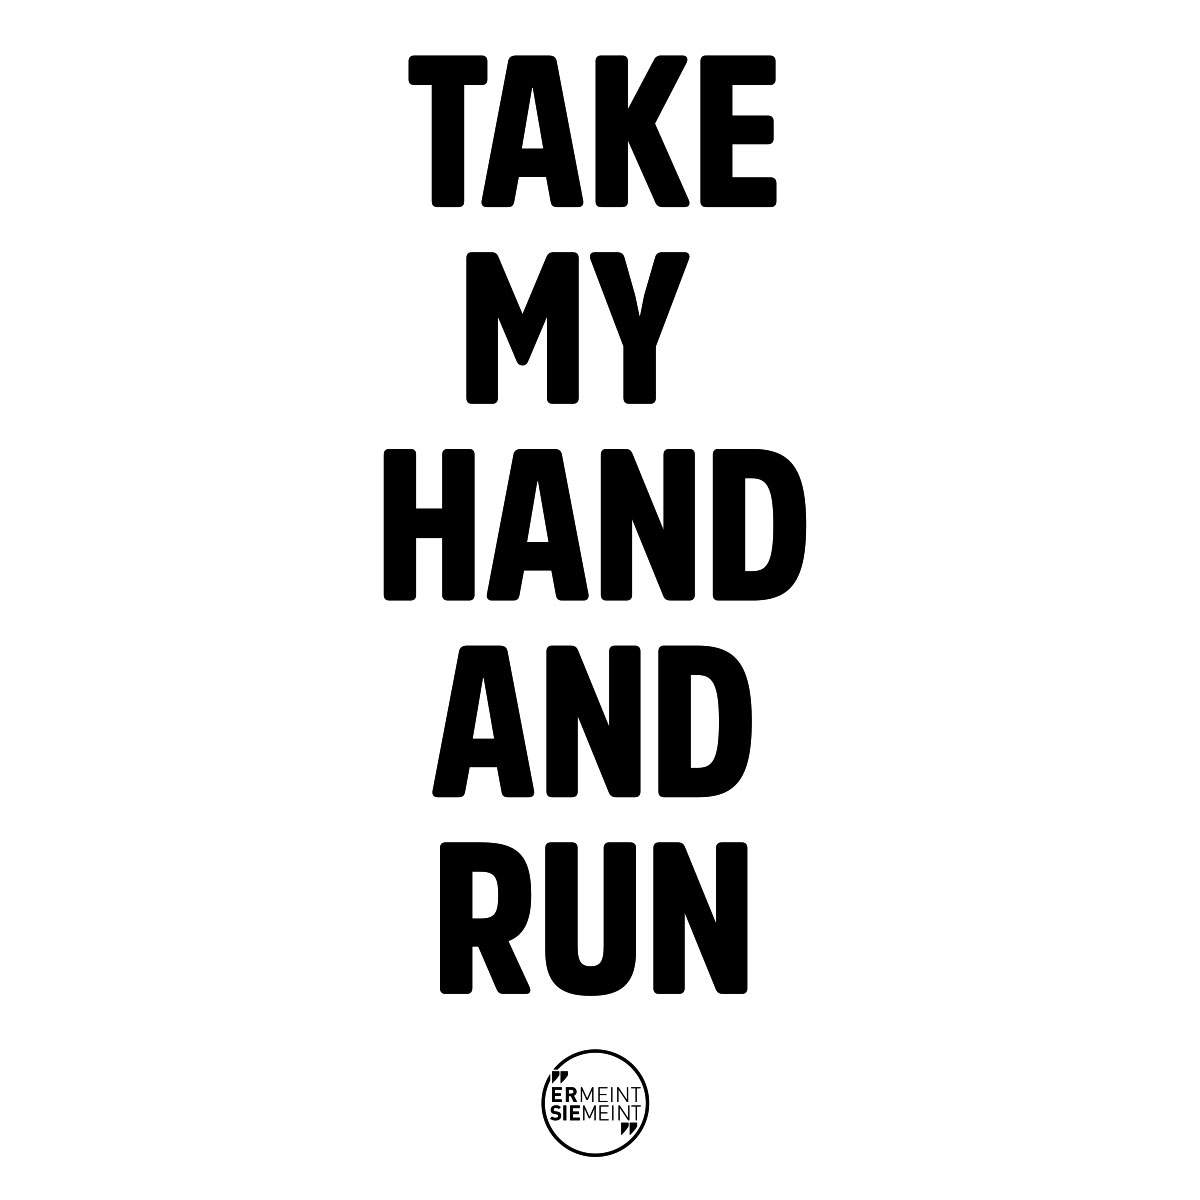 Take my hand and run